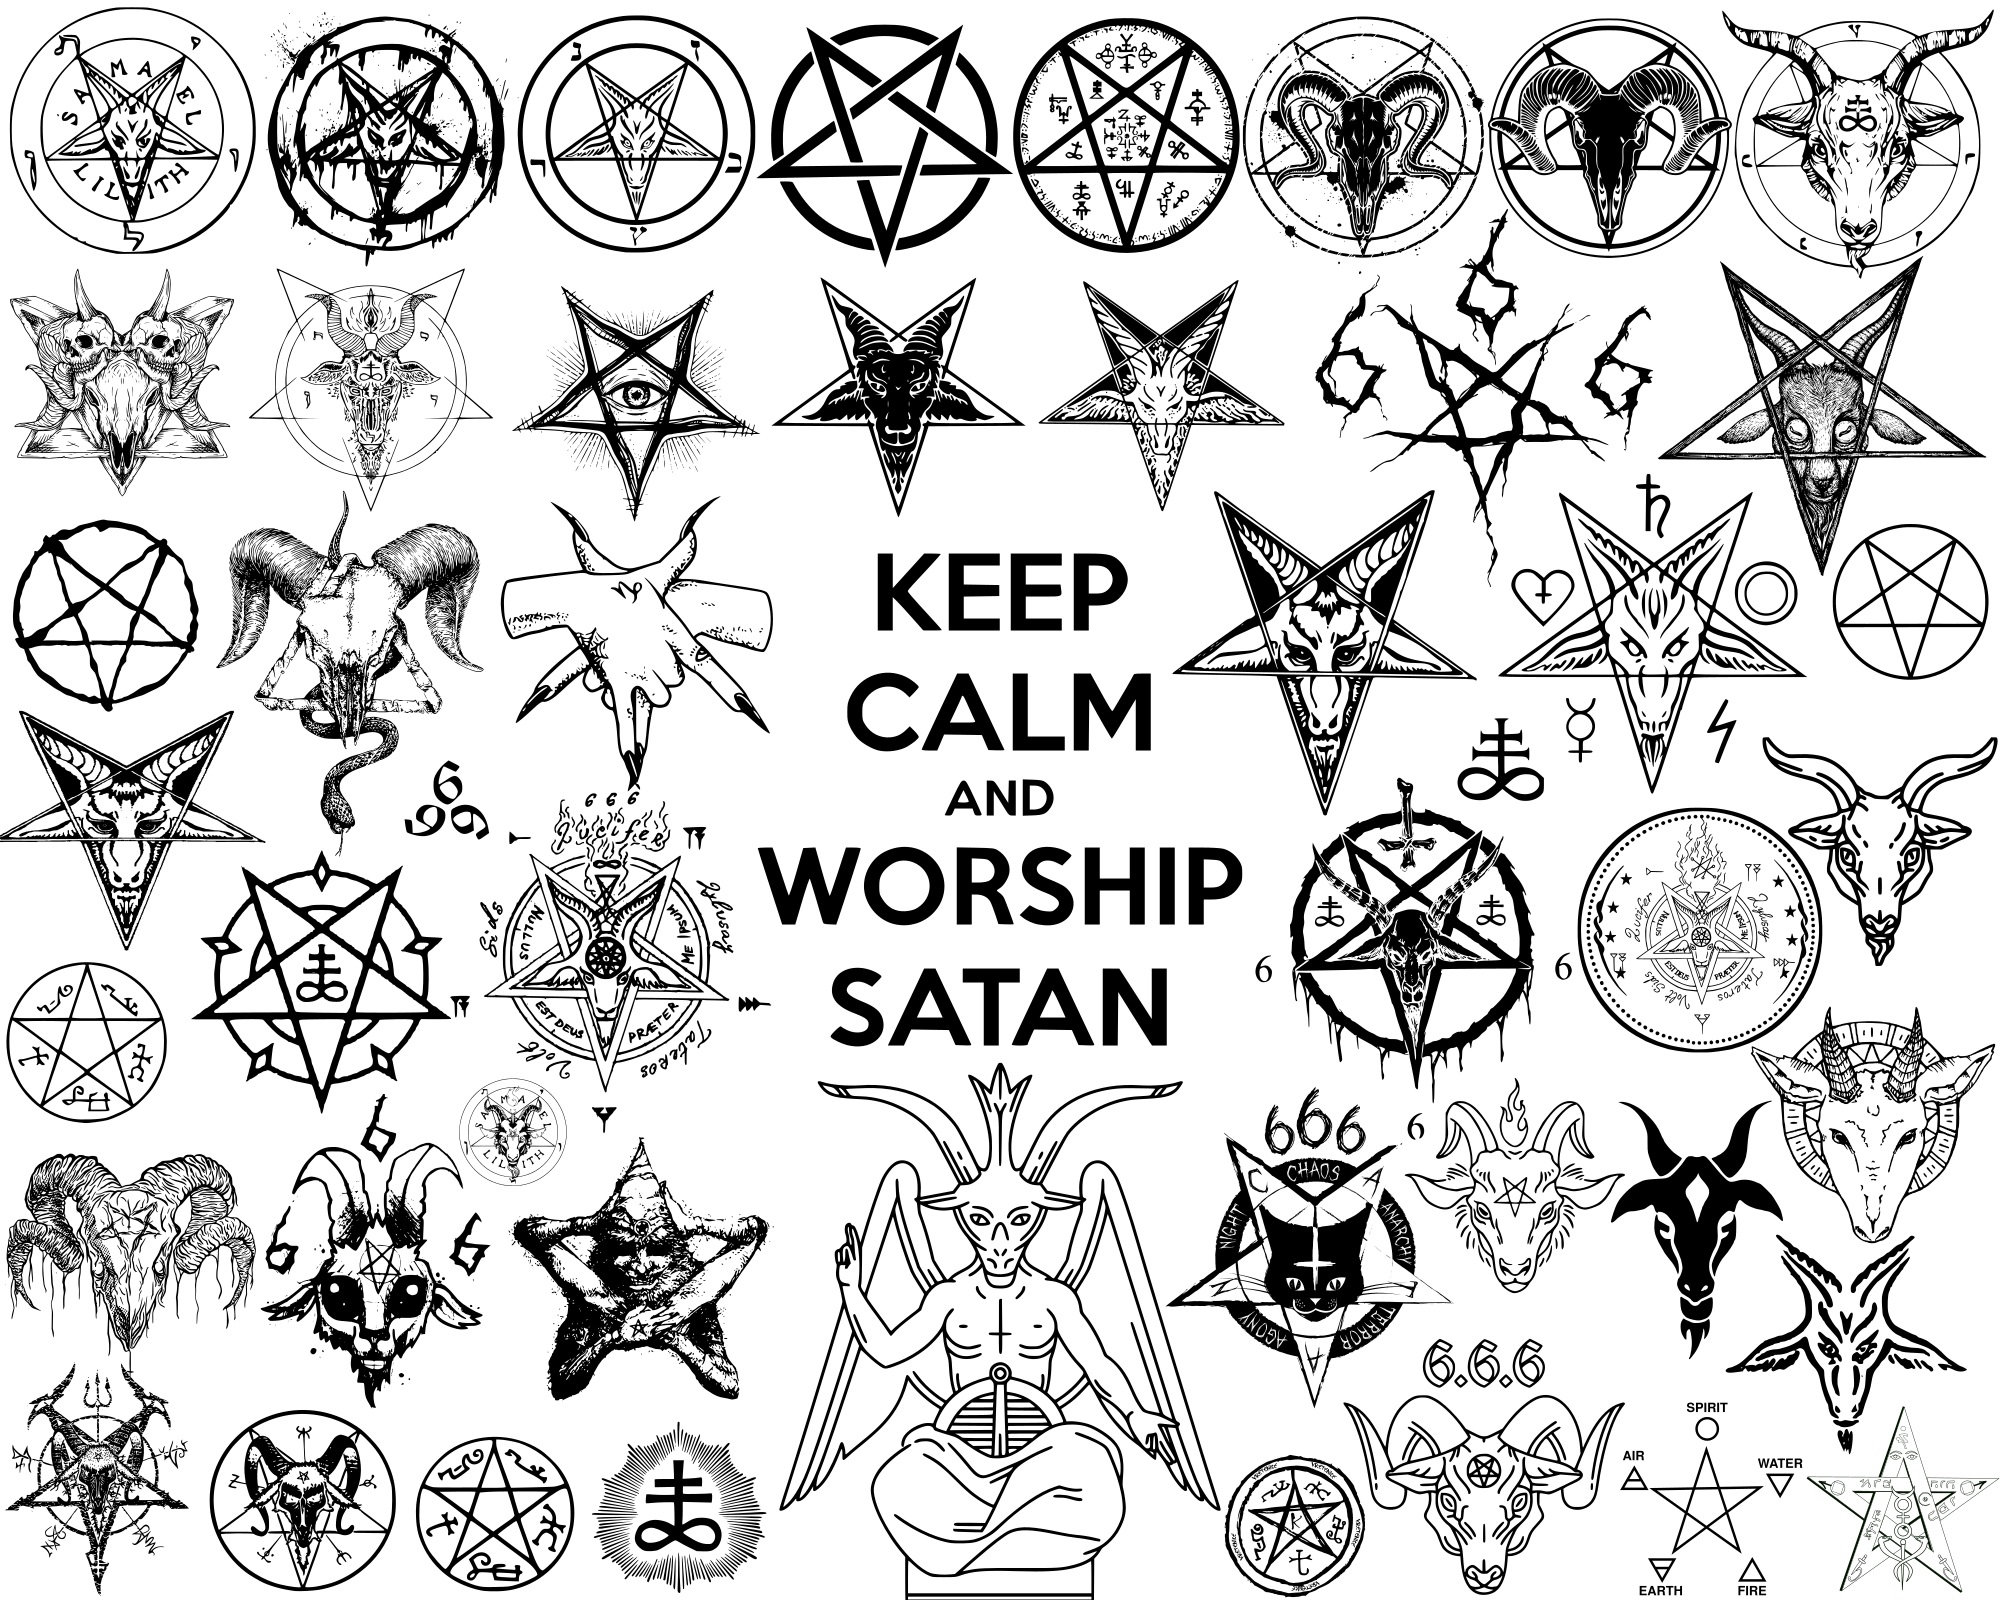 1. Satanic Star Tattoo Designs - wide 4